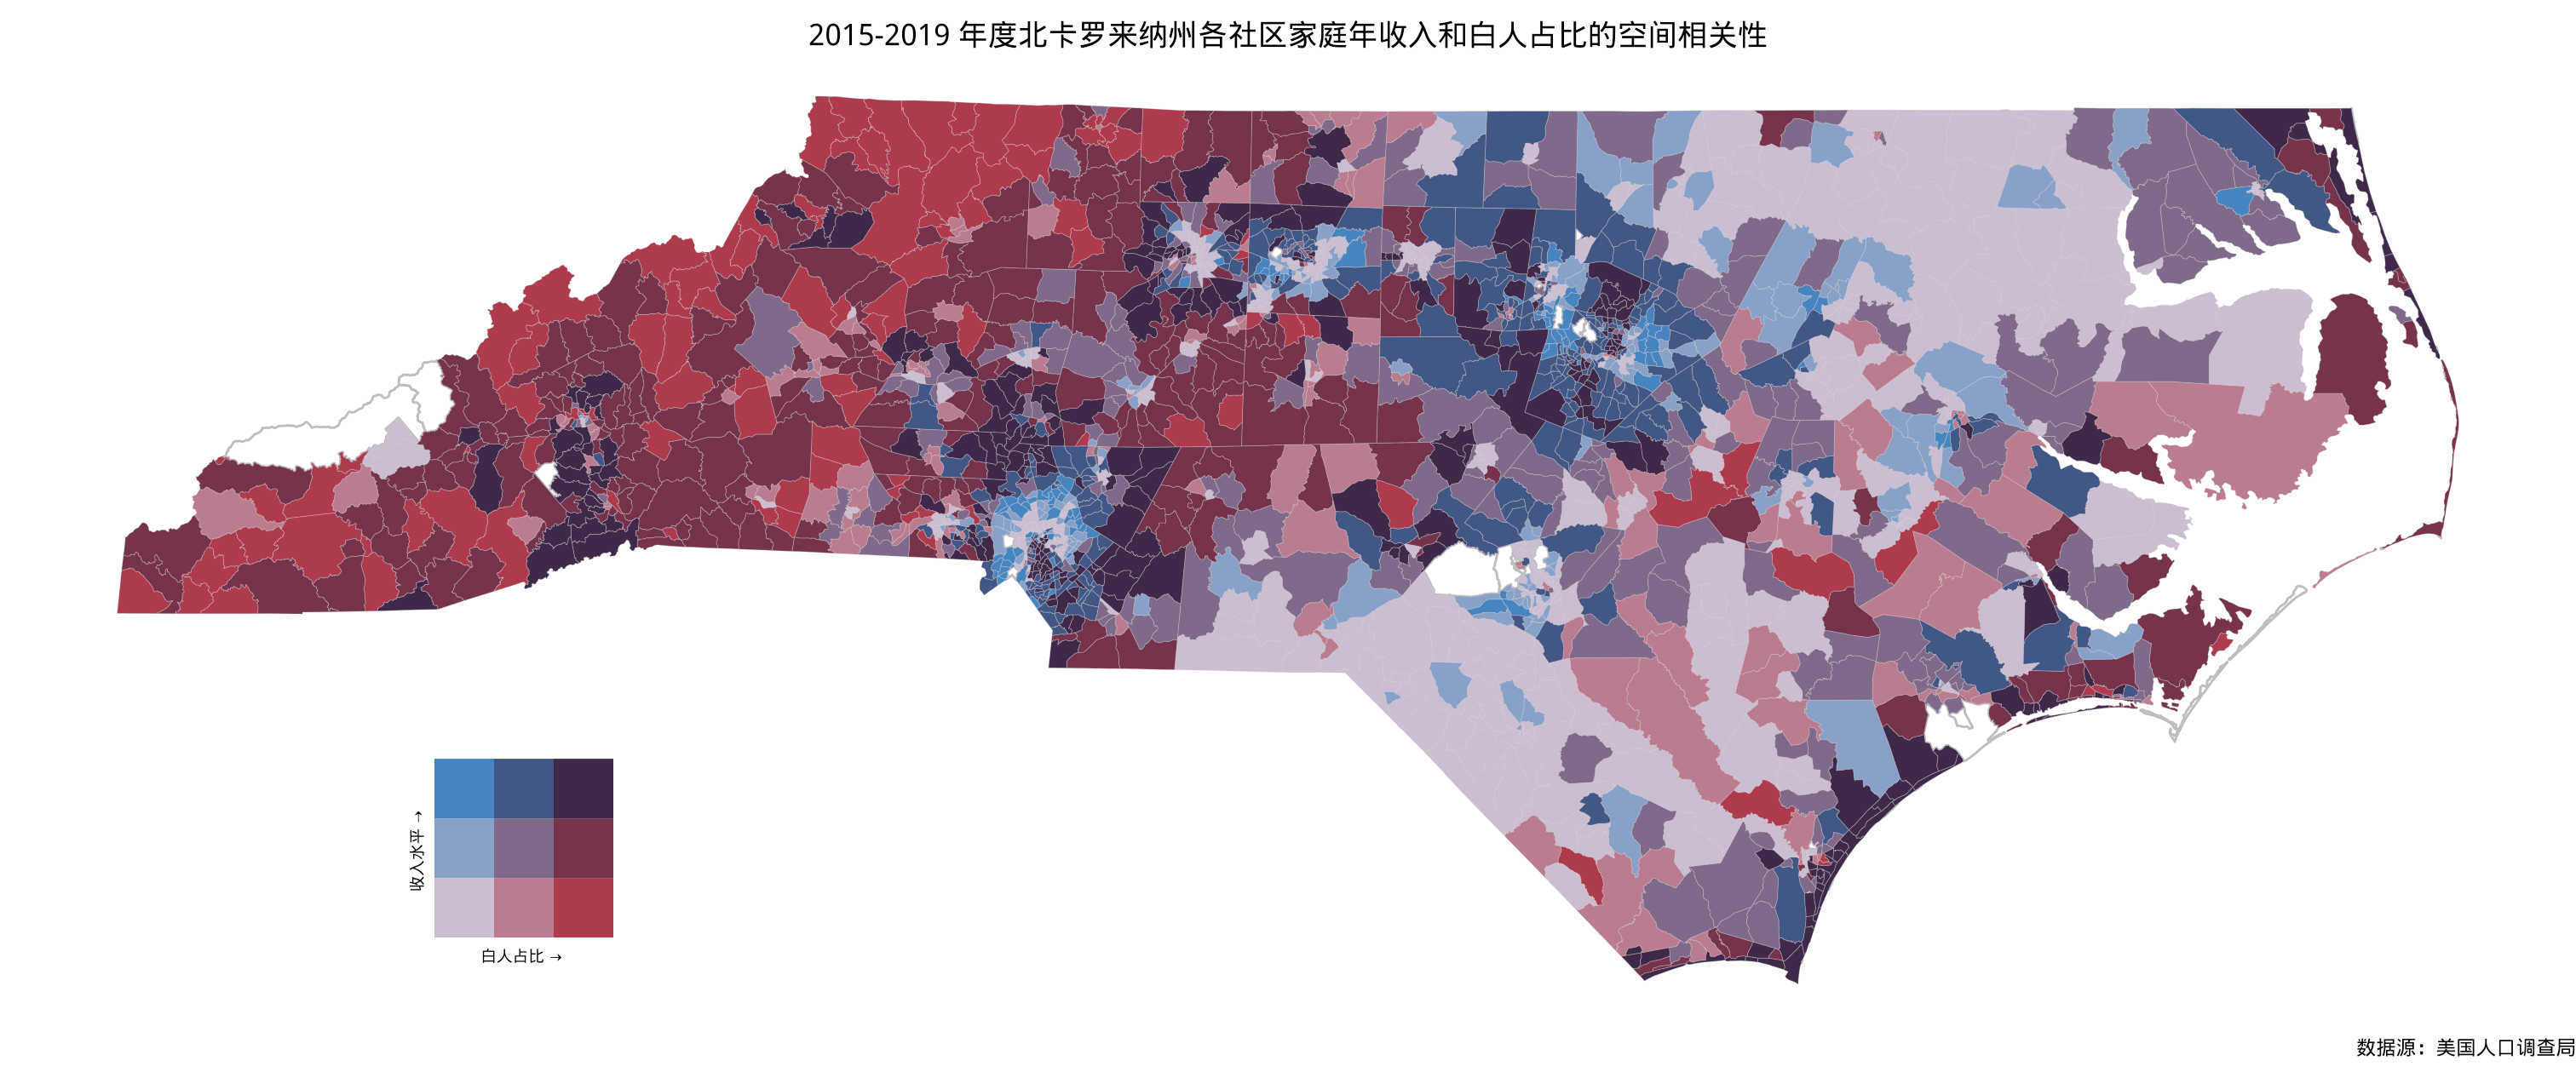 2015-2019 年度北卡州社区级家庭年收入和白人占比的空间相关性